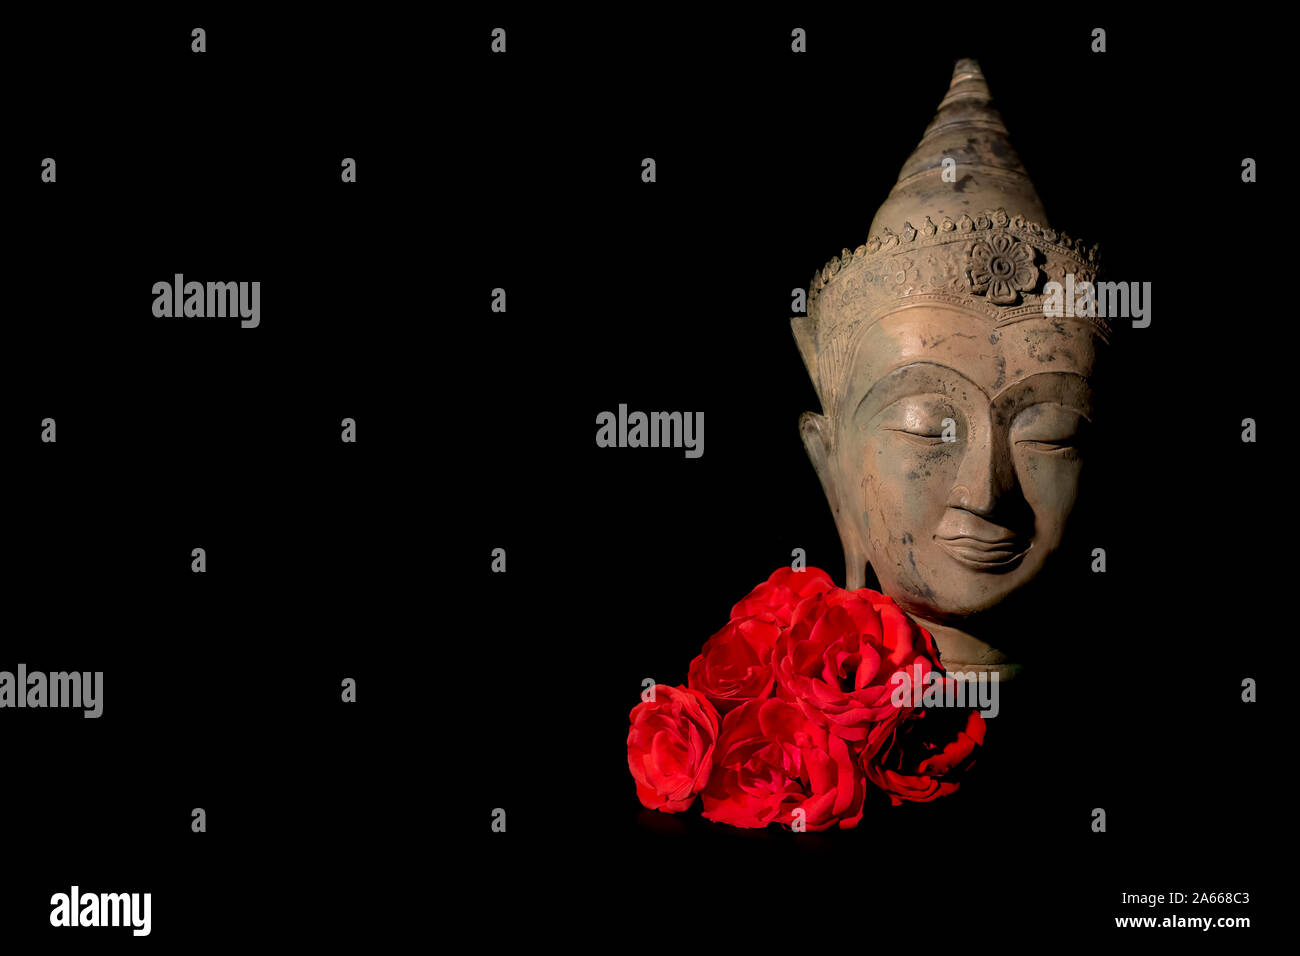 La paix et l'amour. Statue tête de Bouddha traditionnelle sereine avec des roses rouges. La recherche de l'illumination spirituelle par la méditation. Le Bouddhisme Zen pureté et min Banque D'Images